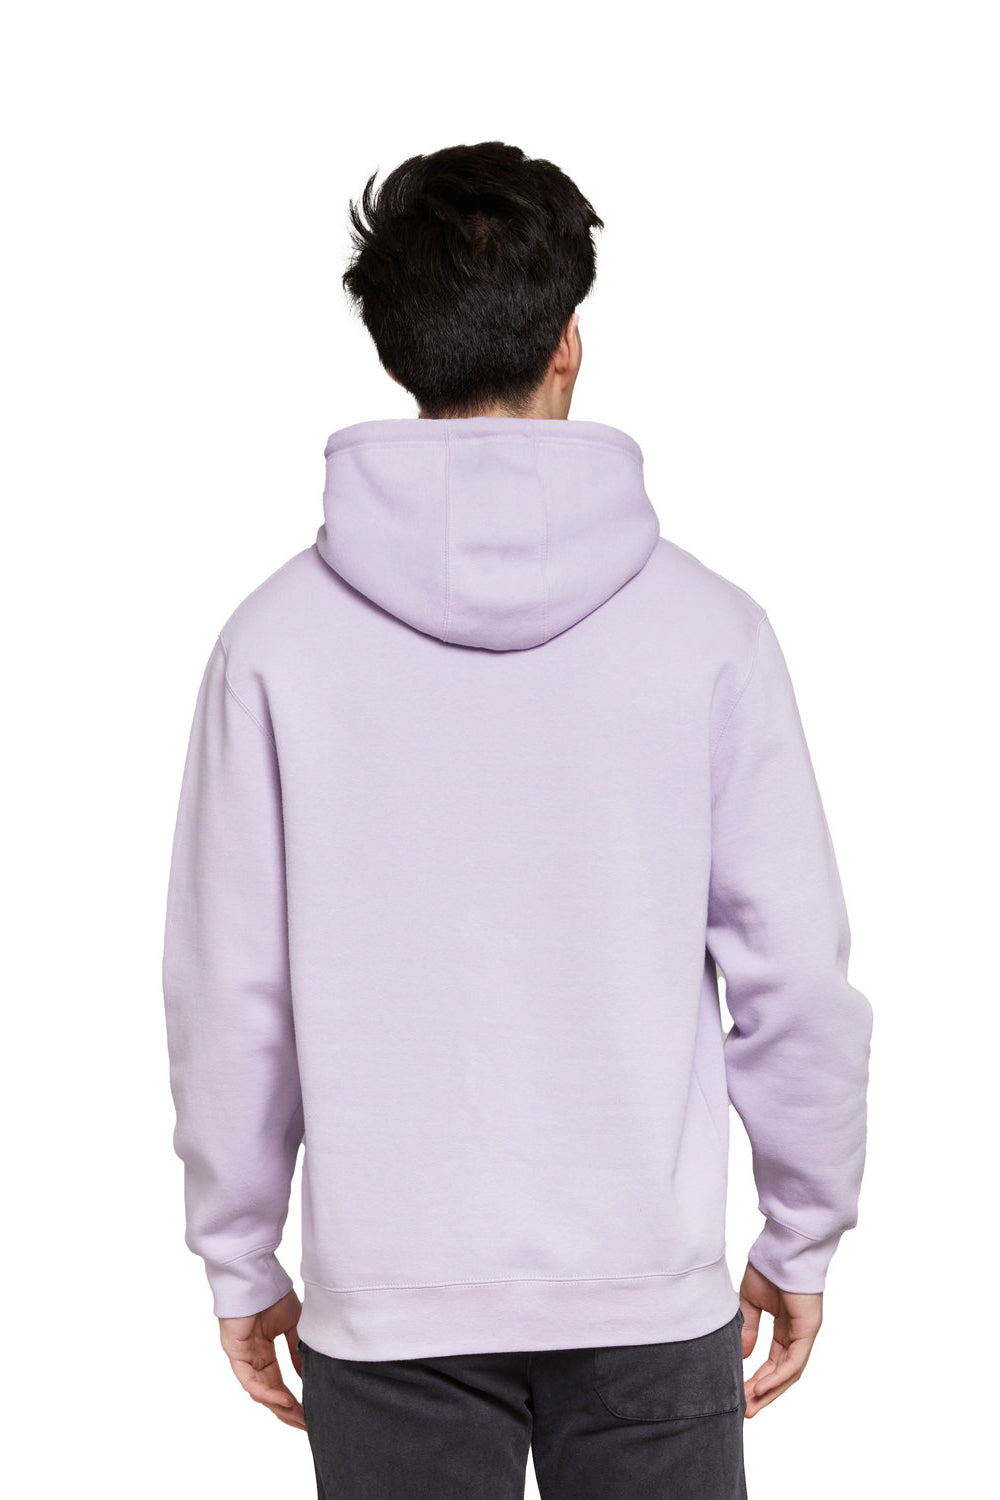 Lane Seven LS14001 Mens Premium Hooded Sweatshirt Hoodie Lilac Purple Back